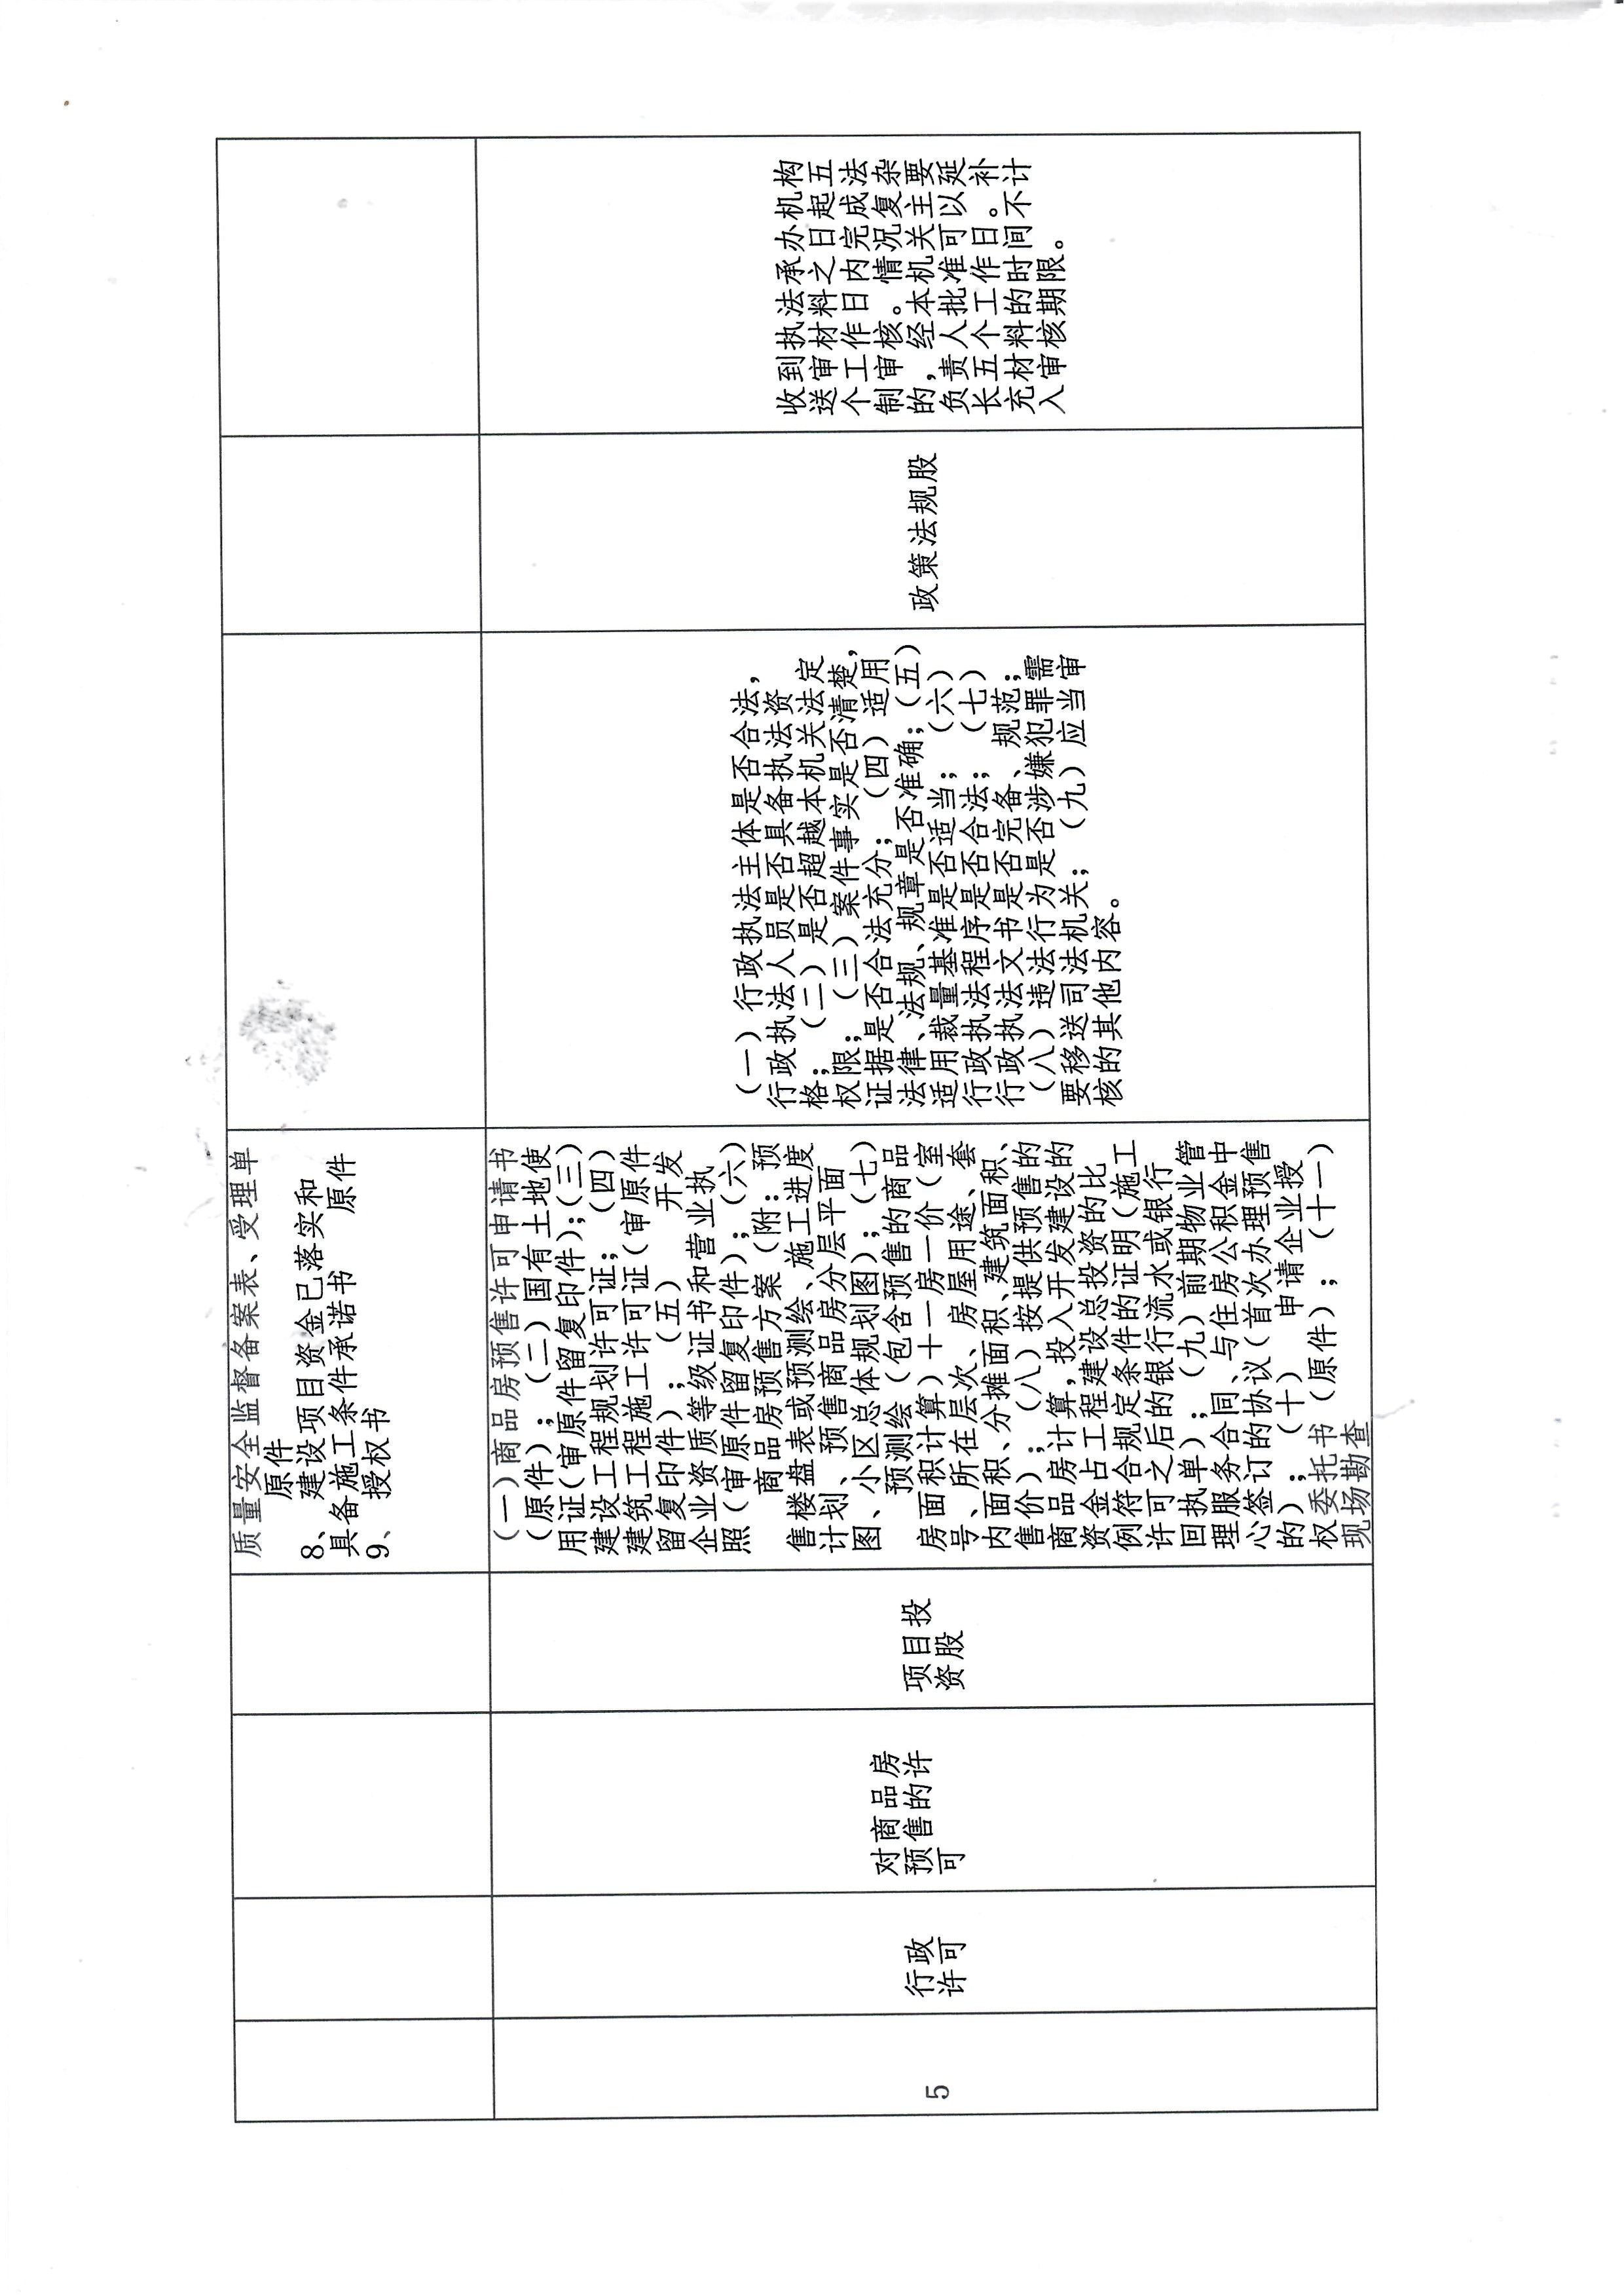 临西县行政审批局重大行政执法决定法制审核目录清单4.jpg